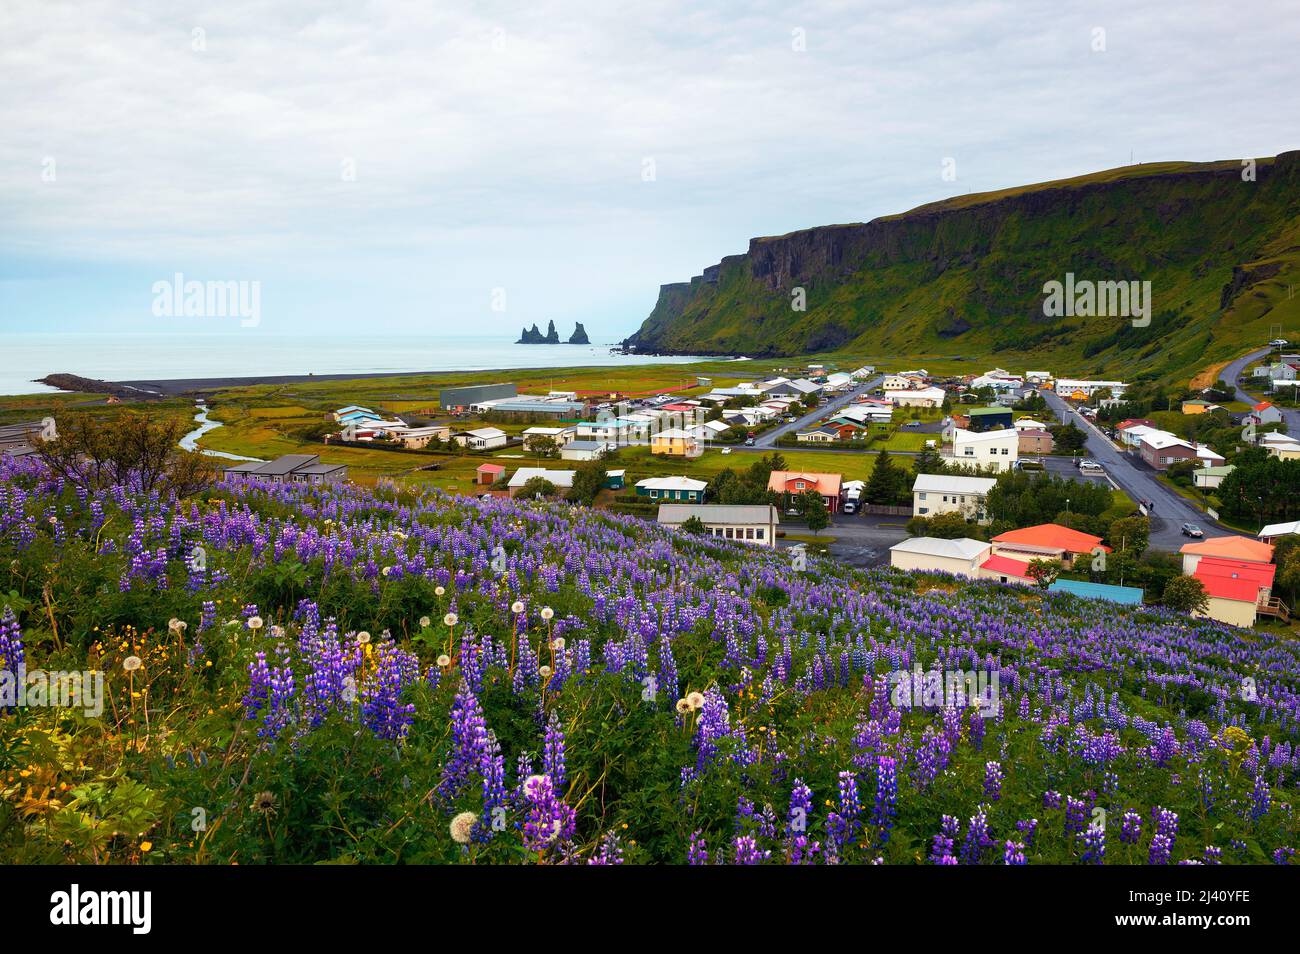 Village of Vik i Myrdal in Iceland Stock Photo